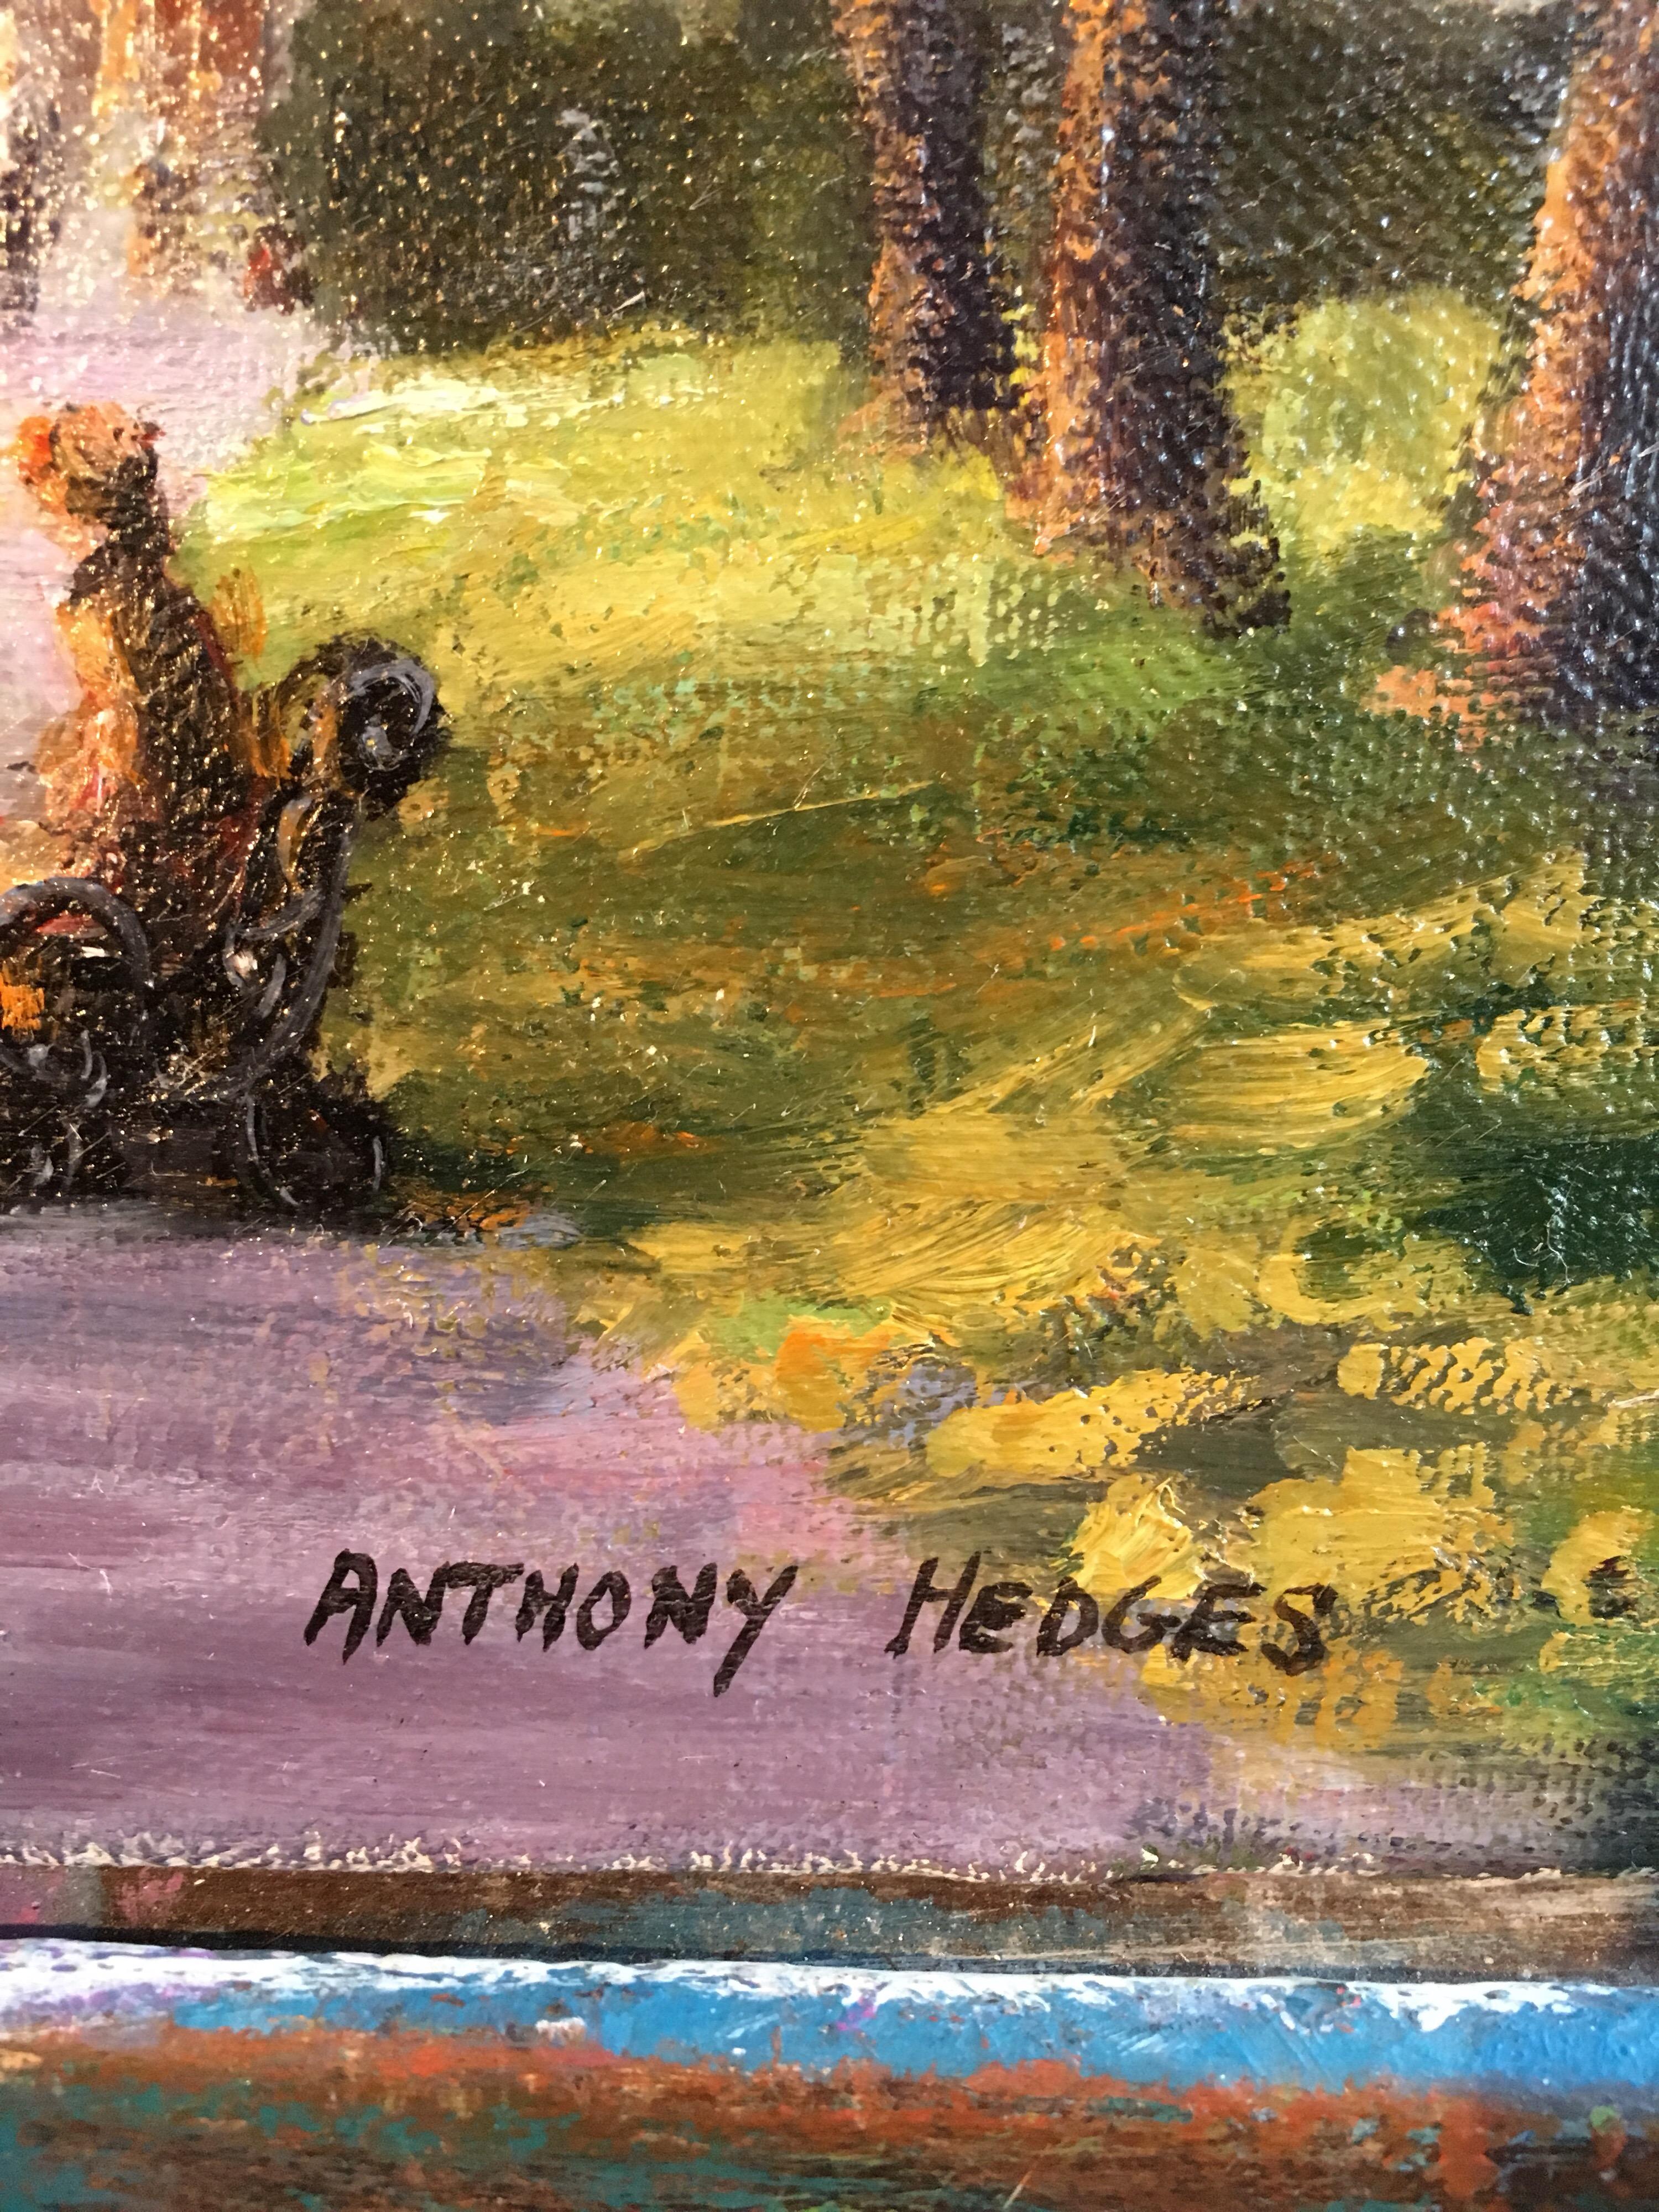 Park Walk, Impressionistische Stadtszene, Signiertes Ölgemälde
Von dem britischen Künstler Anthony Hedges, 20. Jahrhundert
Signiert vom Künstler in der rechten unteren Ecke
Ölgemälde auf Leinwand, ungerahmt
Leinwandgröße: 12 x 16 Zoll

Schöne Szene